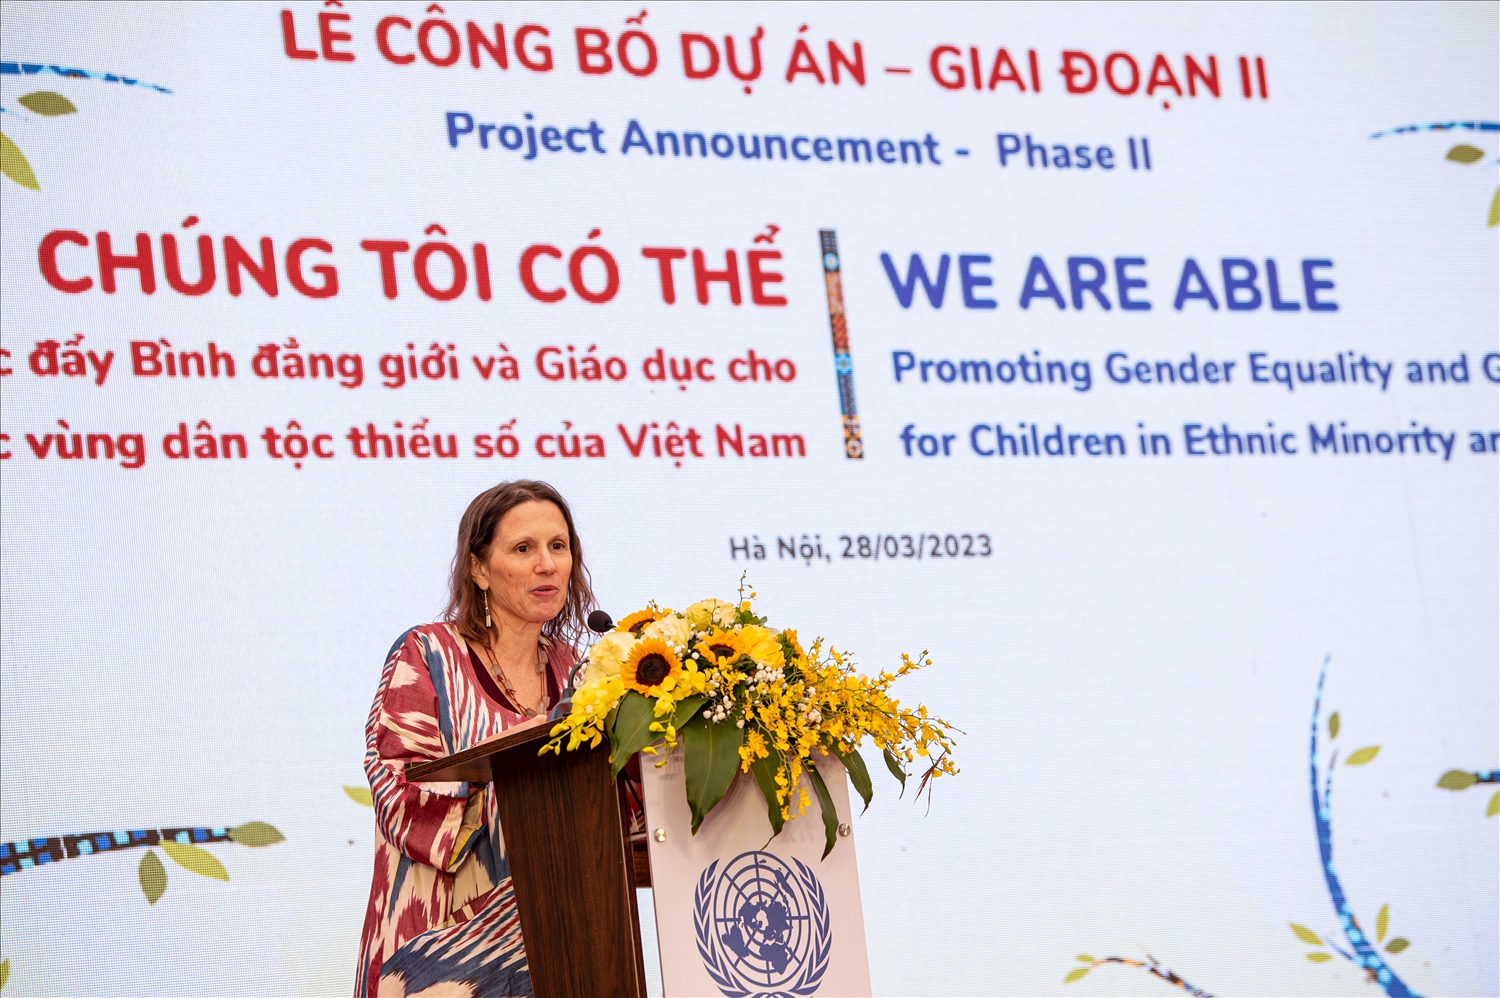 Bà Justine Sass, Trưởng ban Giới và Hòa nhập trong Giáo dục của Trụ sở chính UNESCO tại Paris phát biểu tại lễ công bố